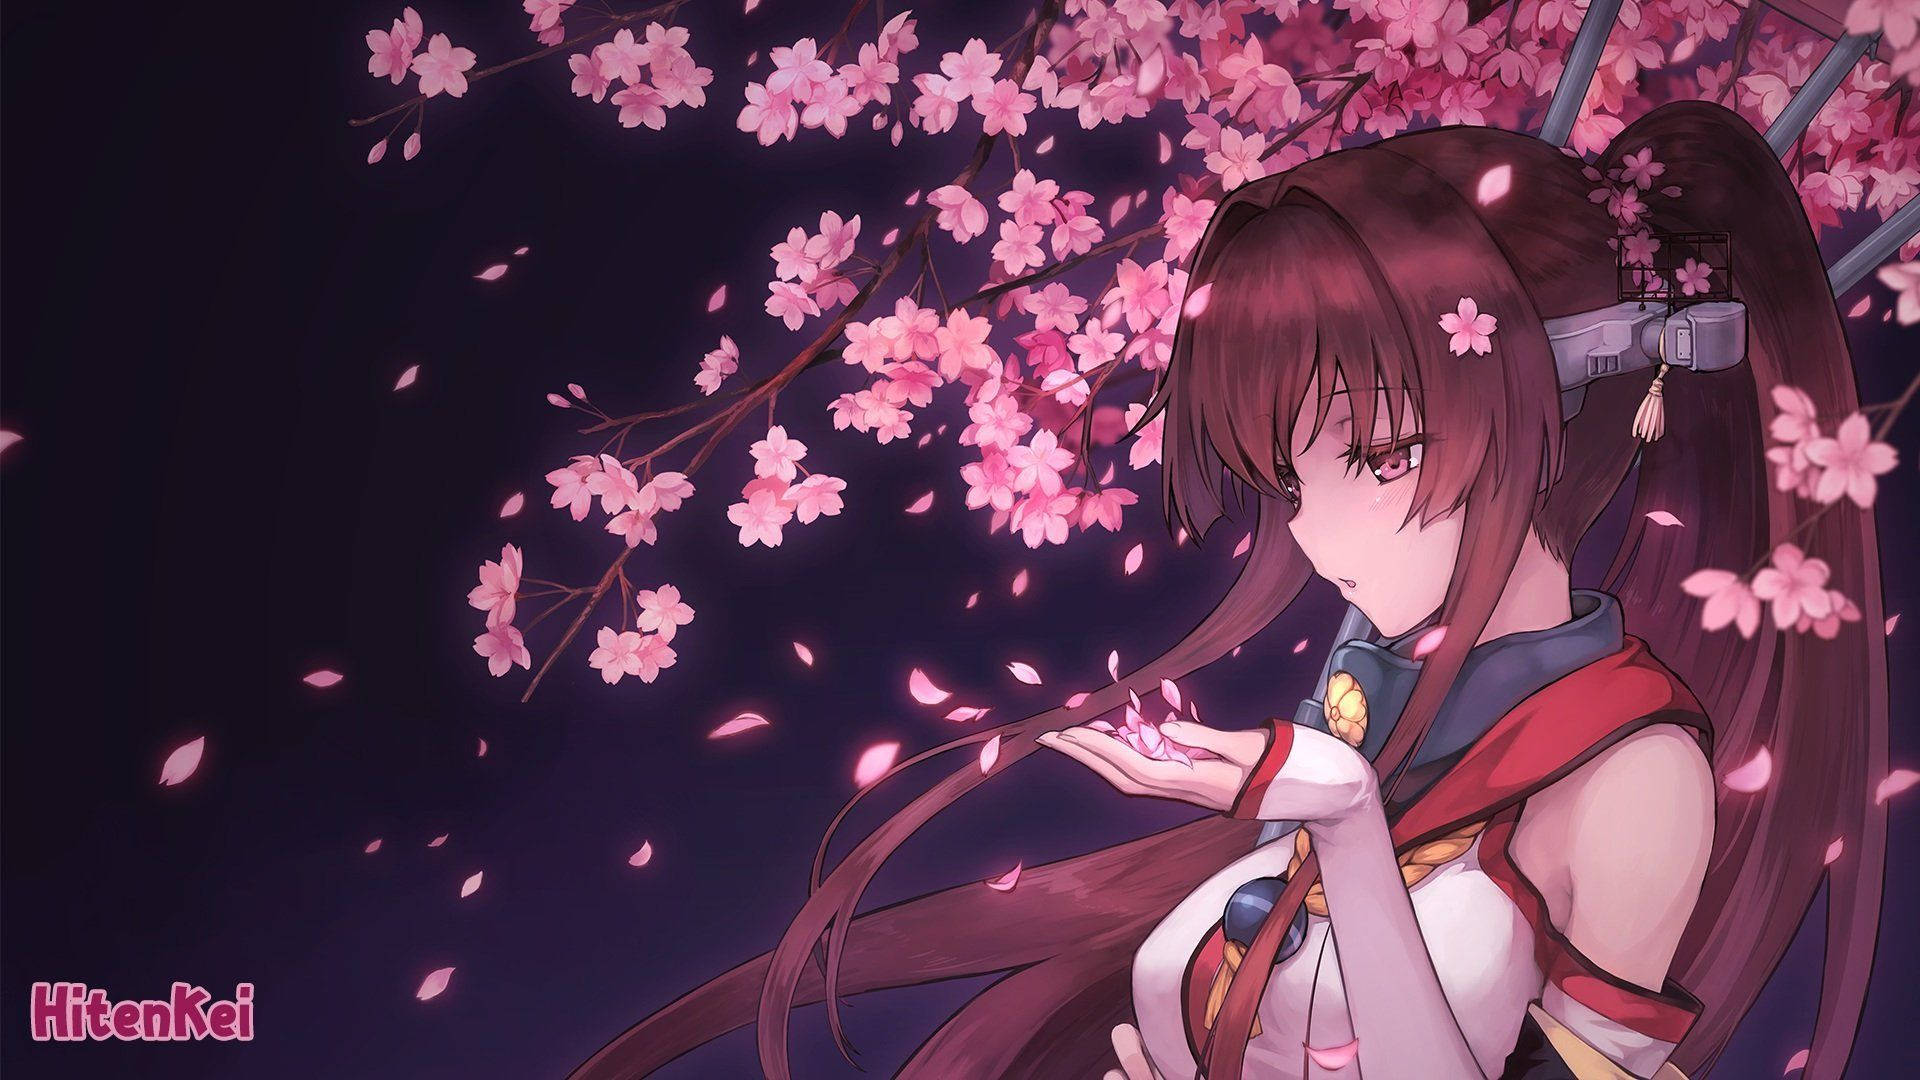 Anime girl wearing uniform standing under a pink Sakura tree wallpaper